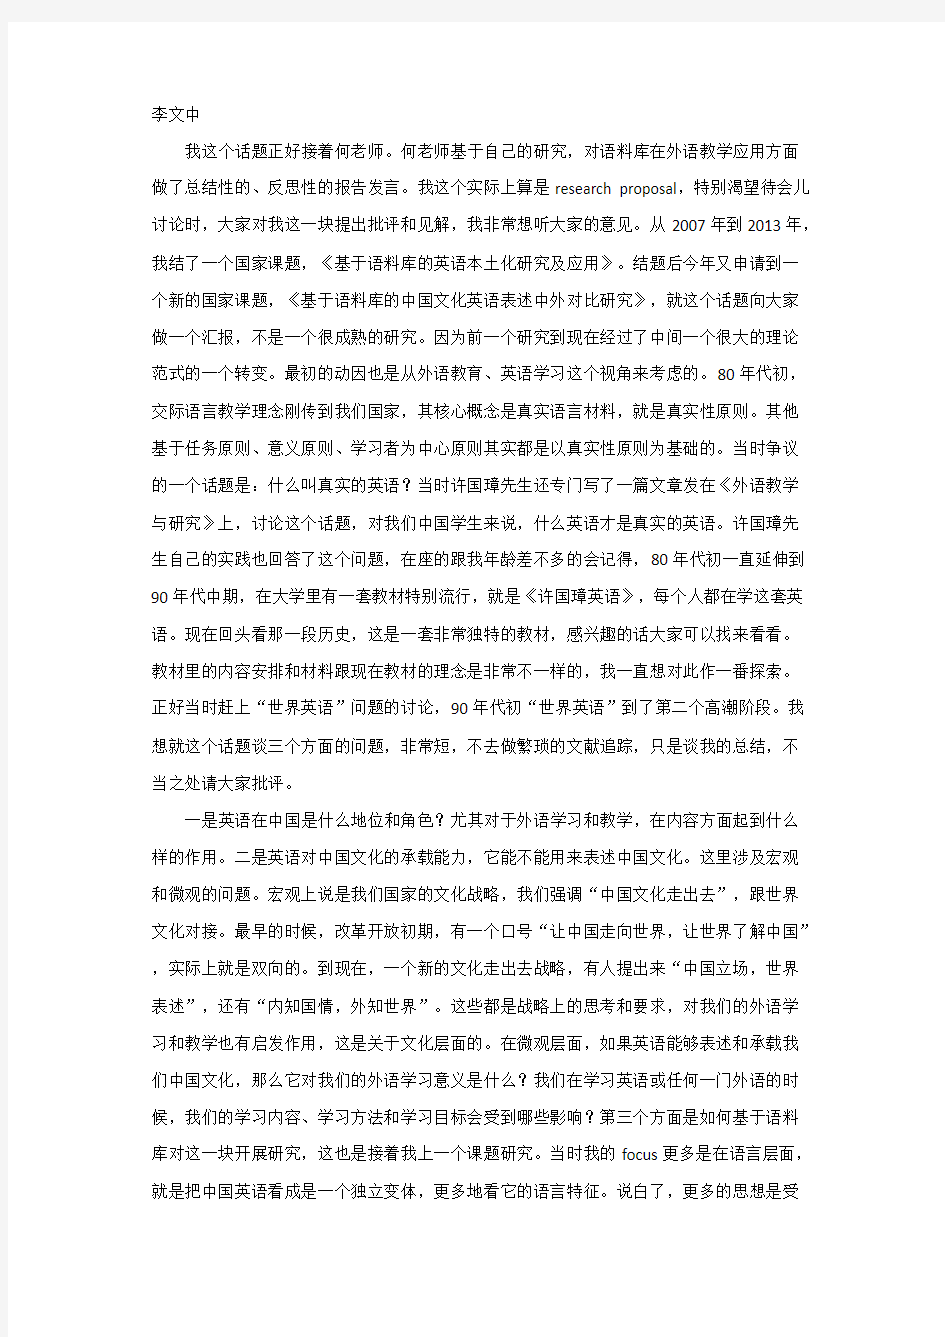 李文中-CLIC 2013 第二届中国语料库语言学大会 专家论坛发言(根据现场录